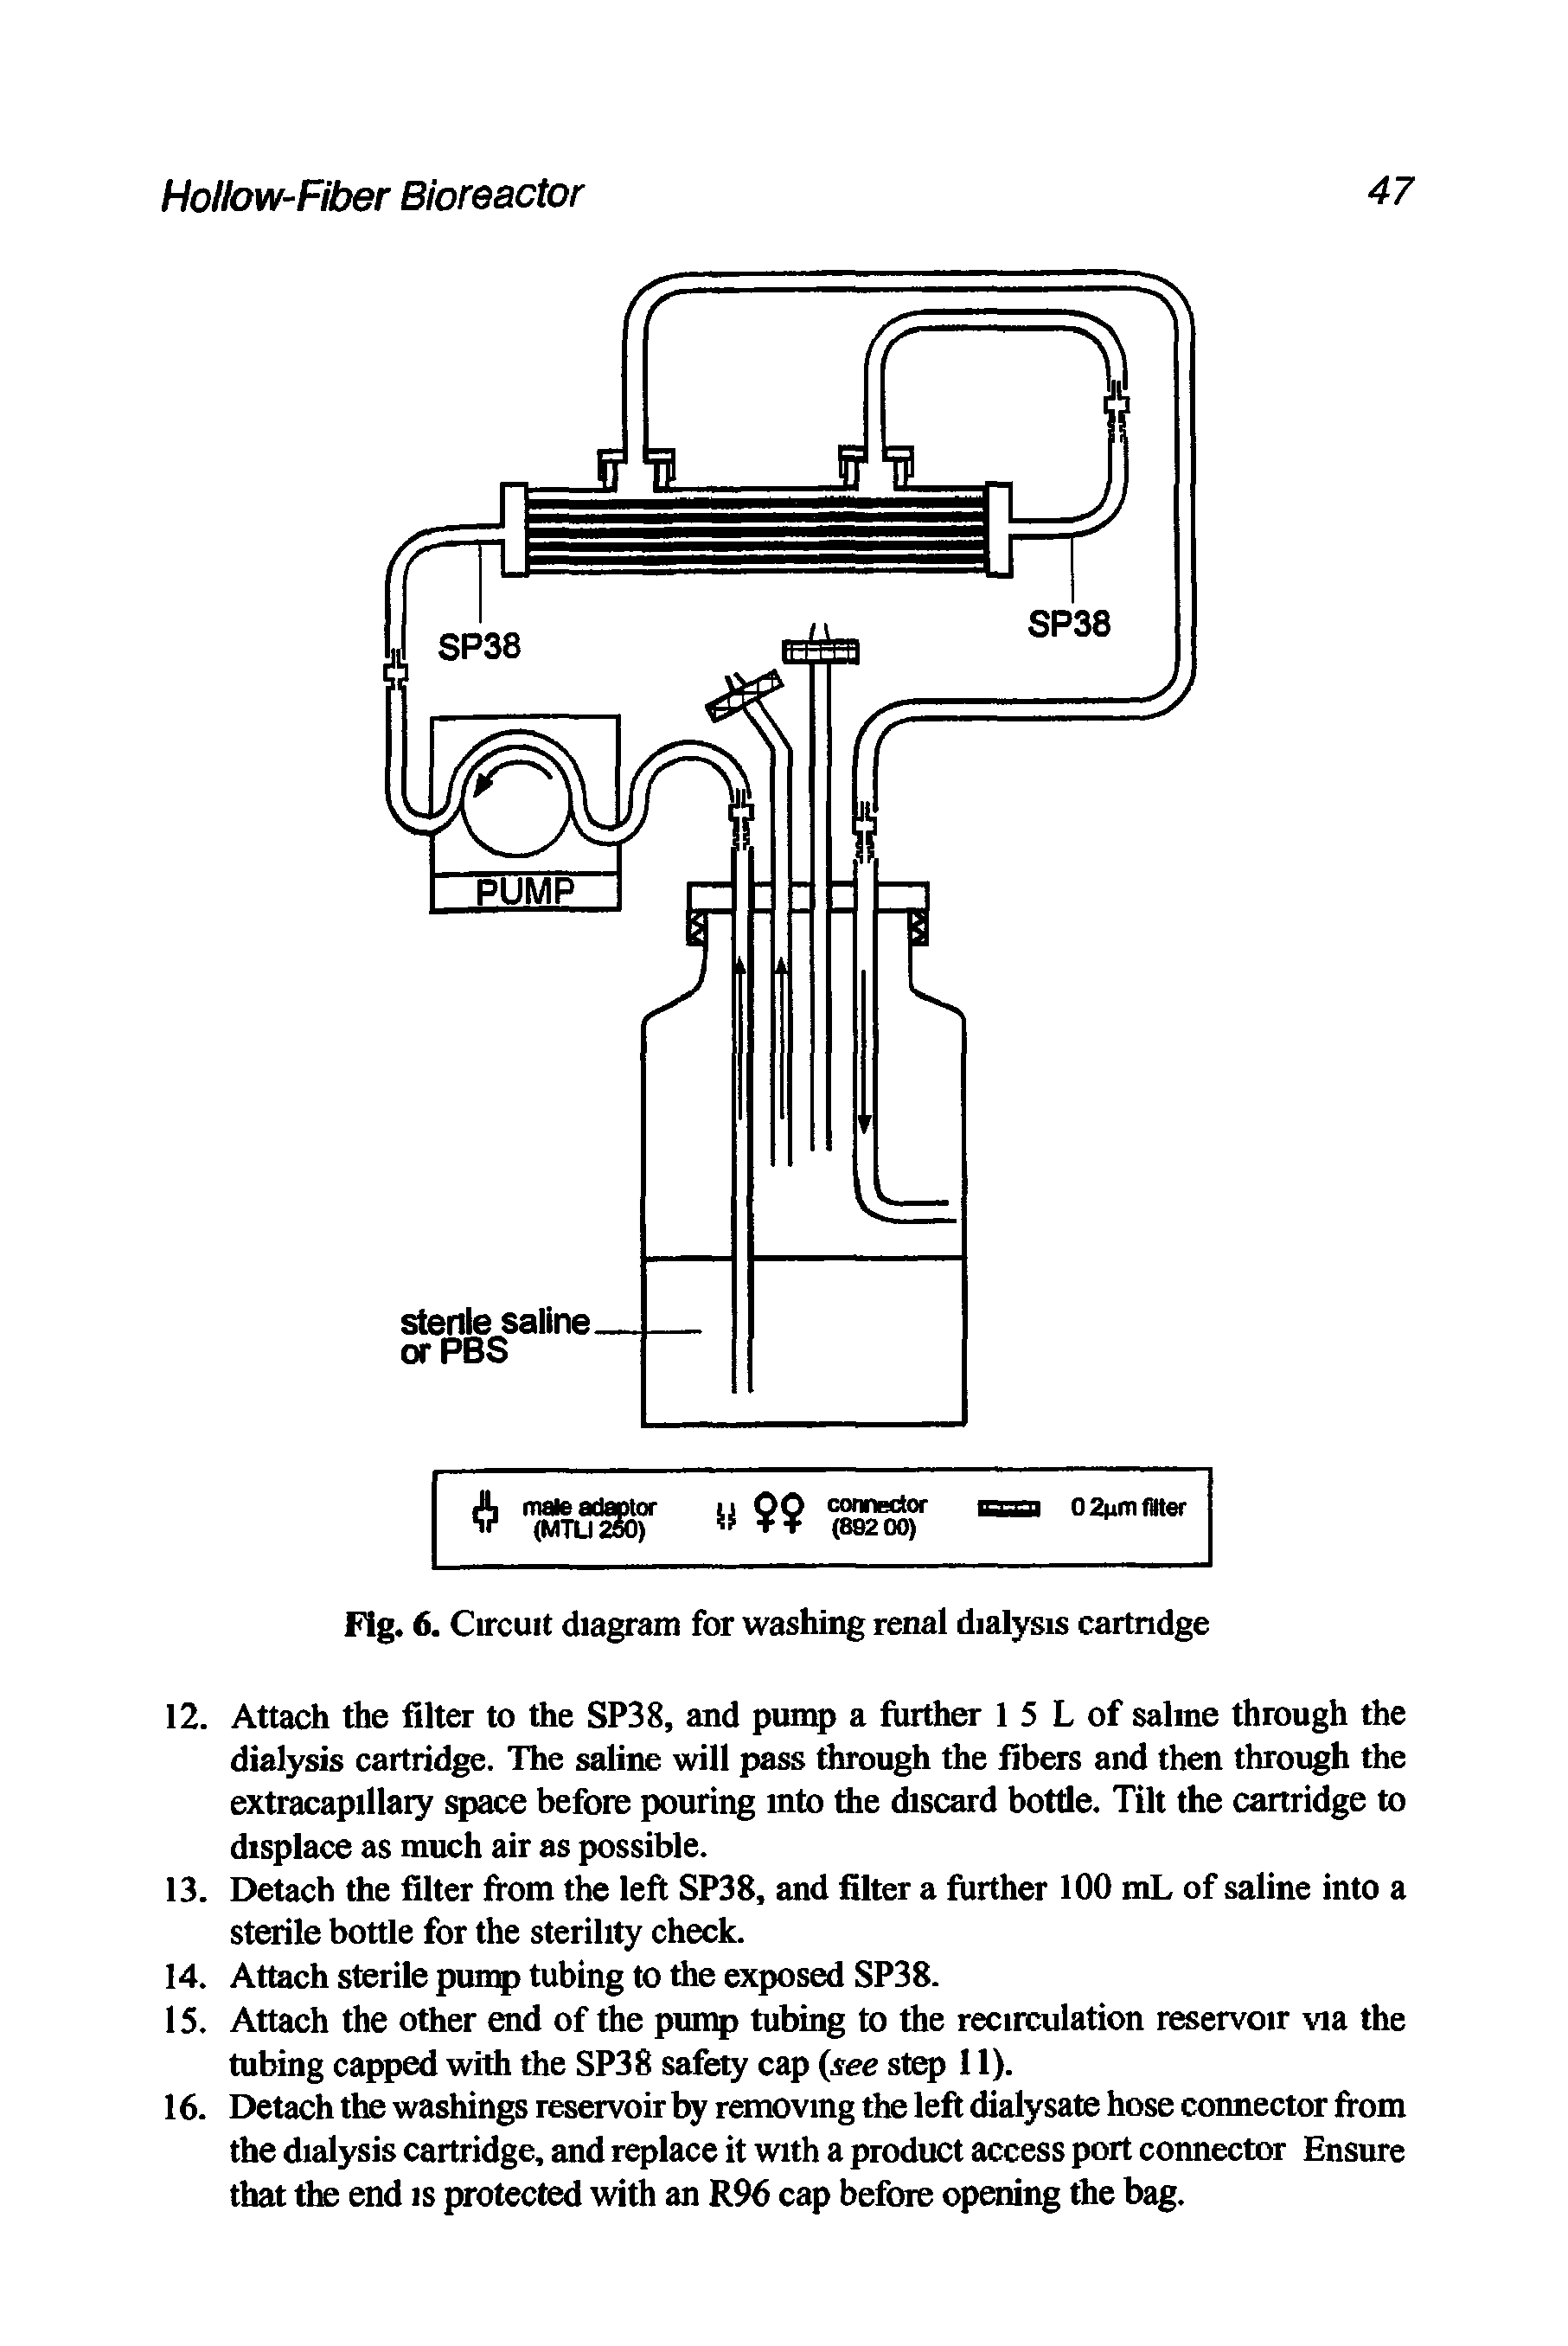 Fig. 6. Circuit diagram for washing renal dialysis cartridge...